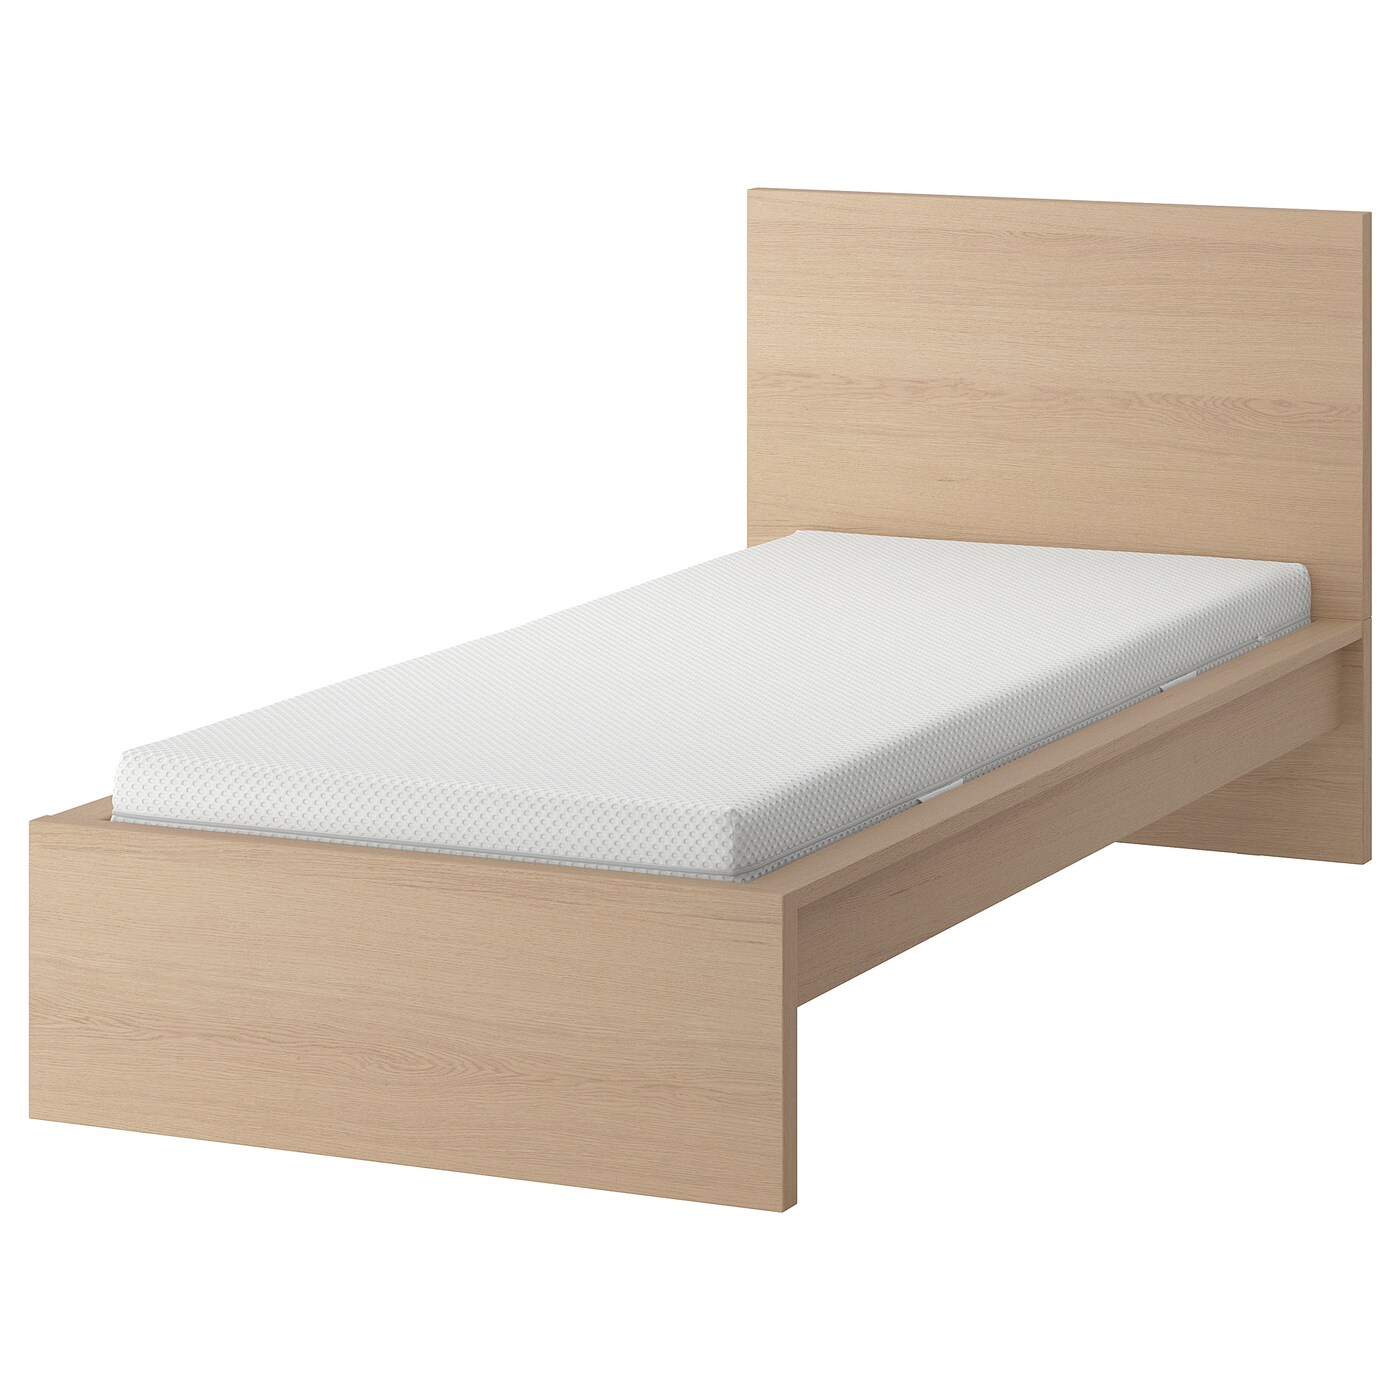 Кровать - IKEA MALM, 200х90 см, матрас средне-жесткий, под беленый дуб, МАЛЬМ ИКЕА